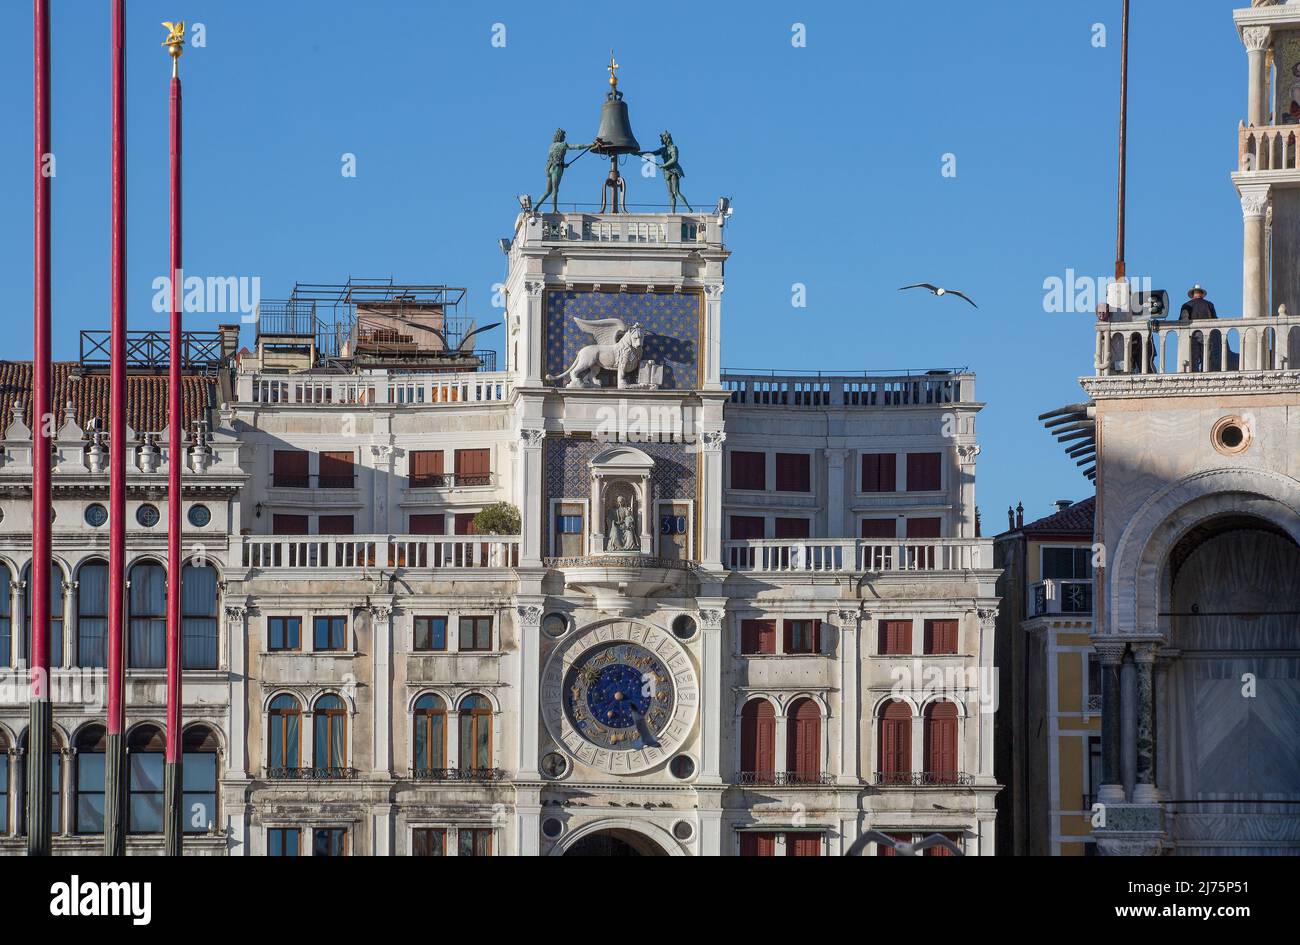 Italien Venedig Uhrenturm -497 vollendet 1499 von Mauro Codussi Südfassade Obergeschesse mit Analog- u Digitaluhr Markuslöwe und bronzenen Glockensch Foto Stock